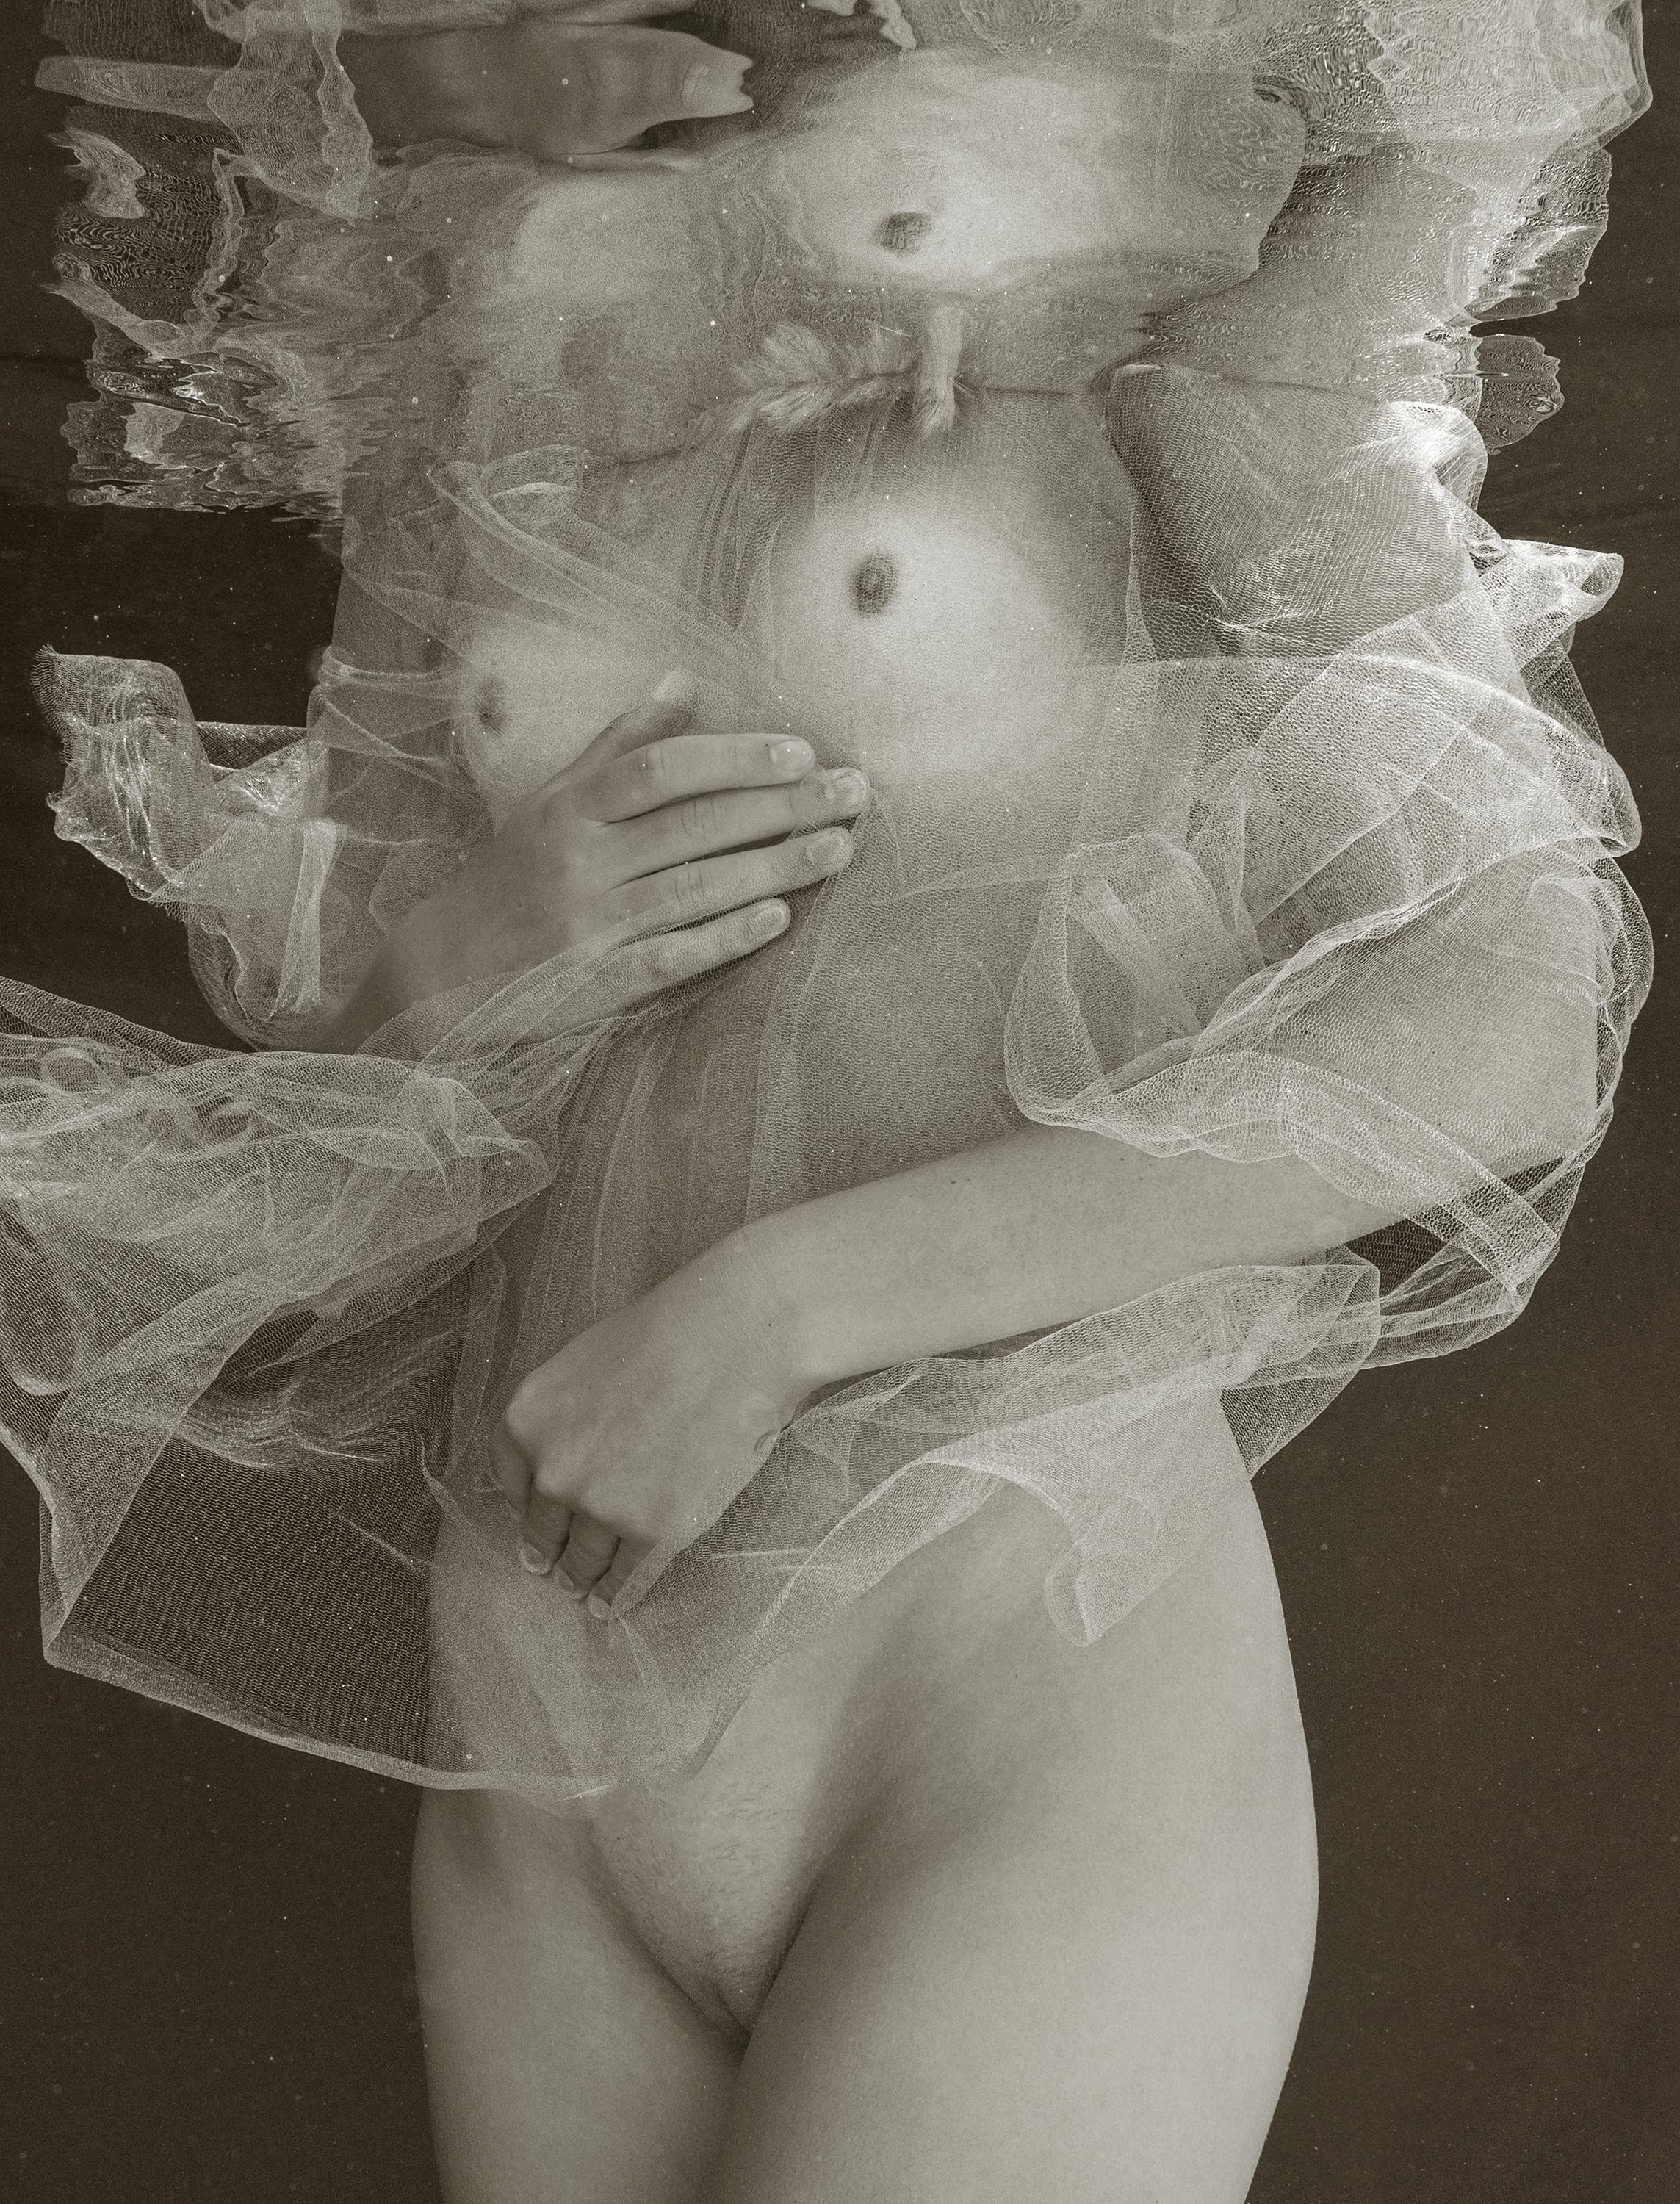 Whiting - photographie sous-marine de nu en noir et blanc - tirage pigmentaire d'archives 44x35